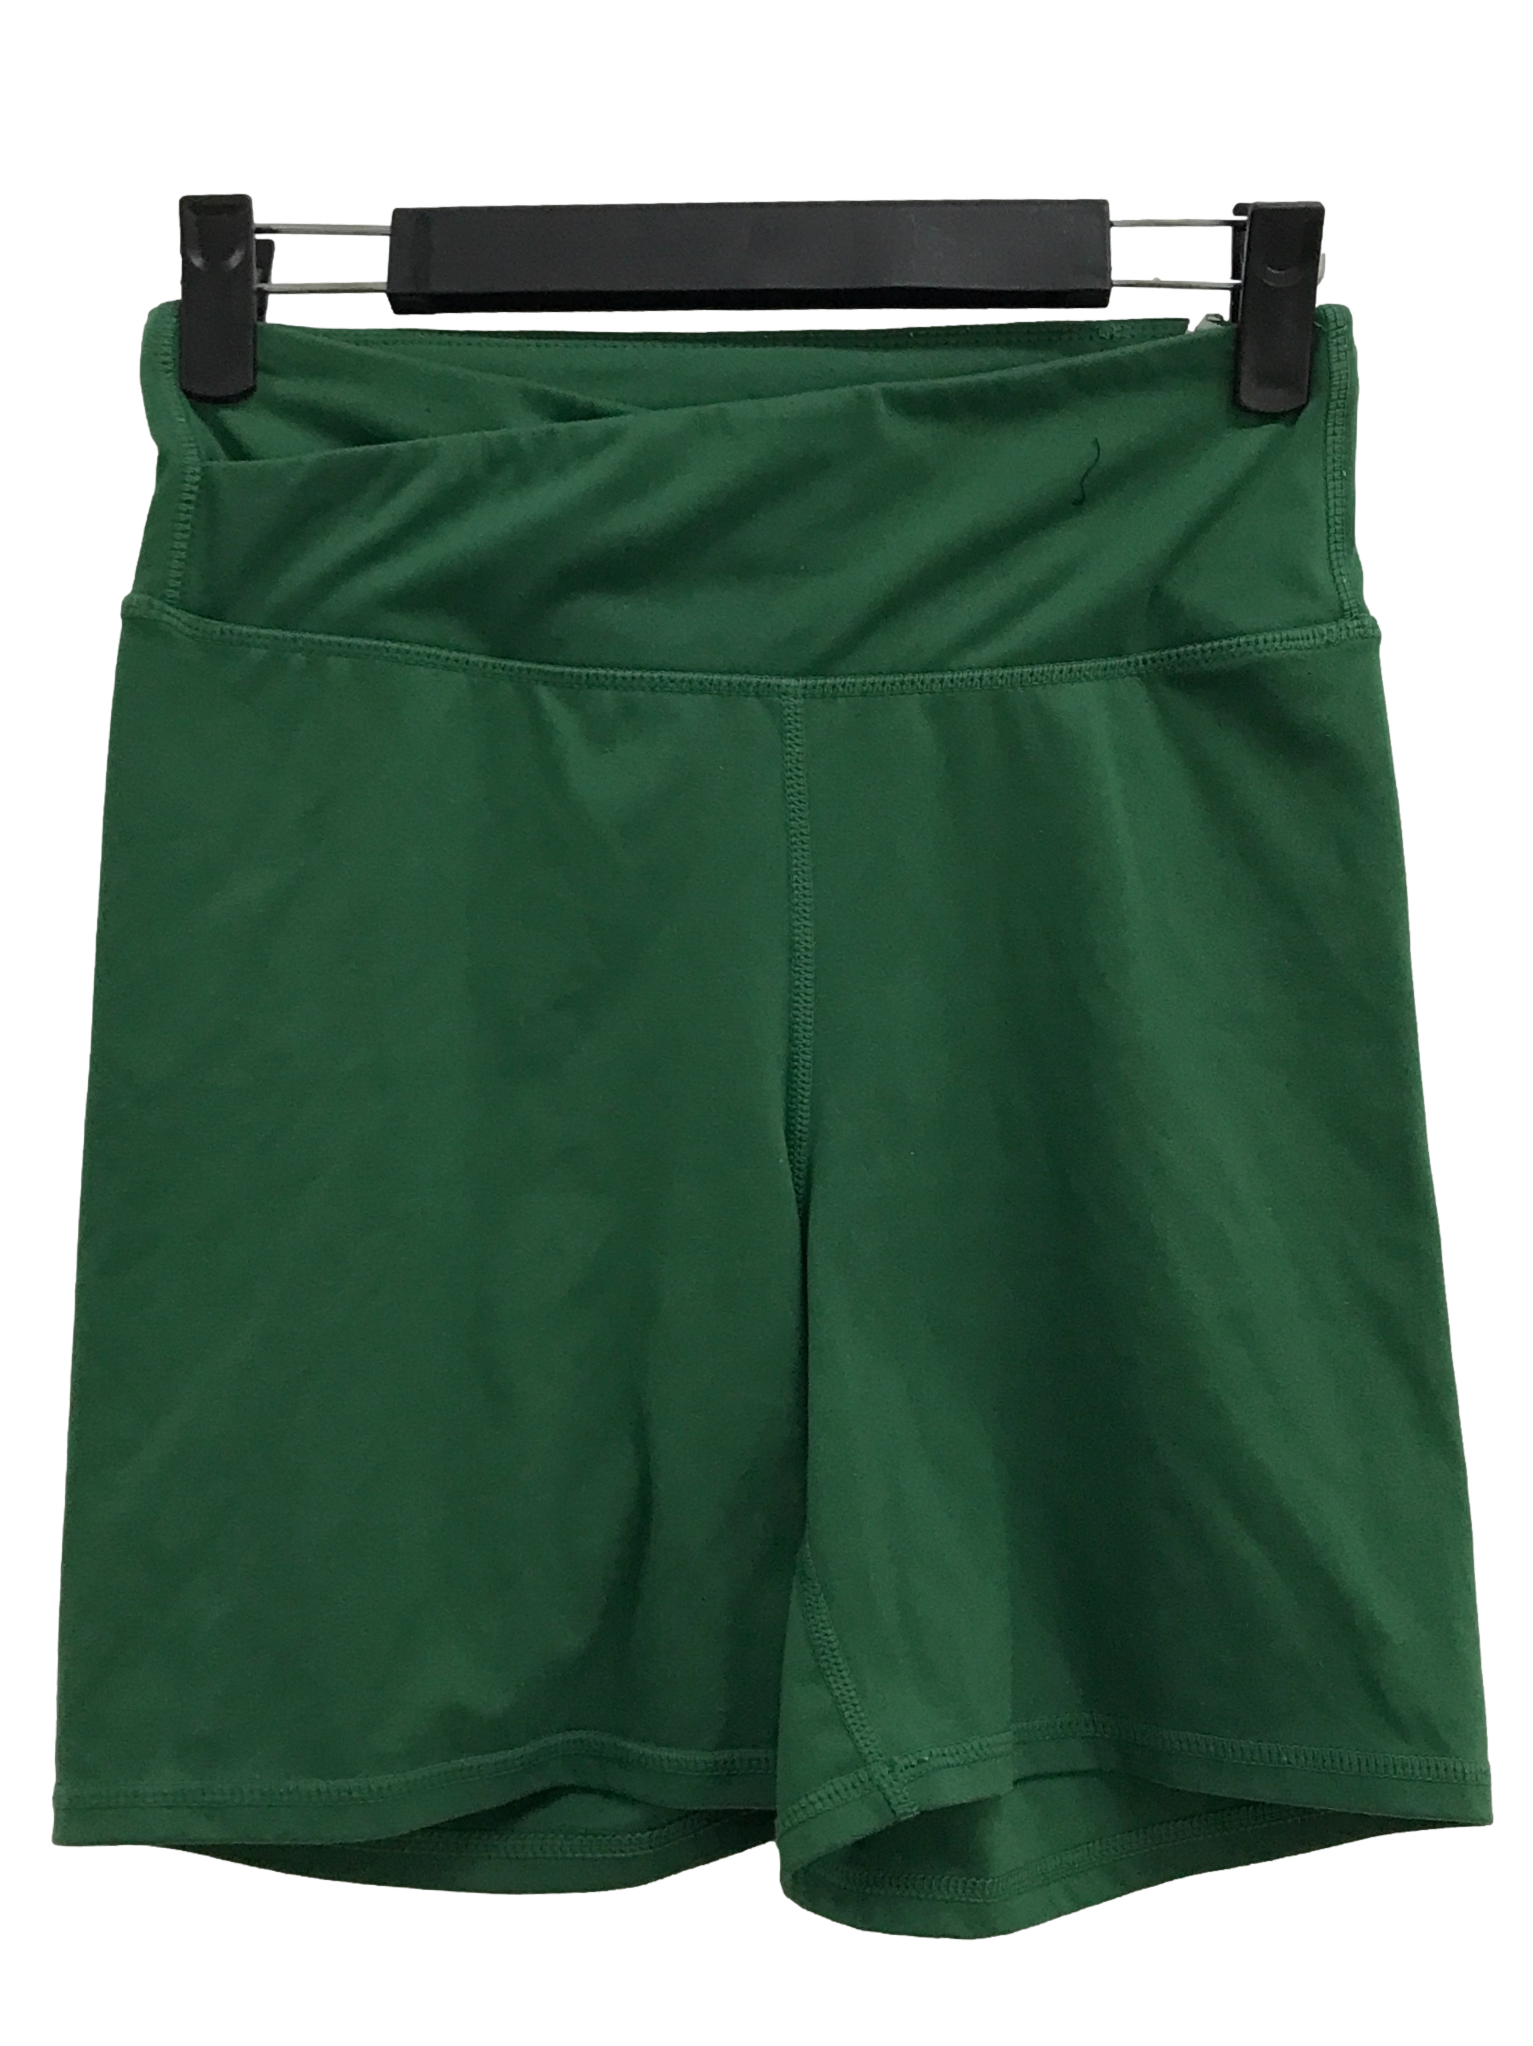 Emerald Green Cycle Shorts